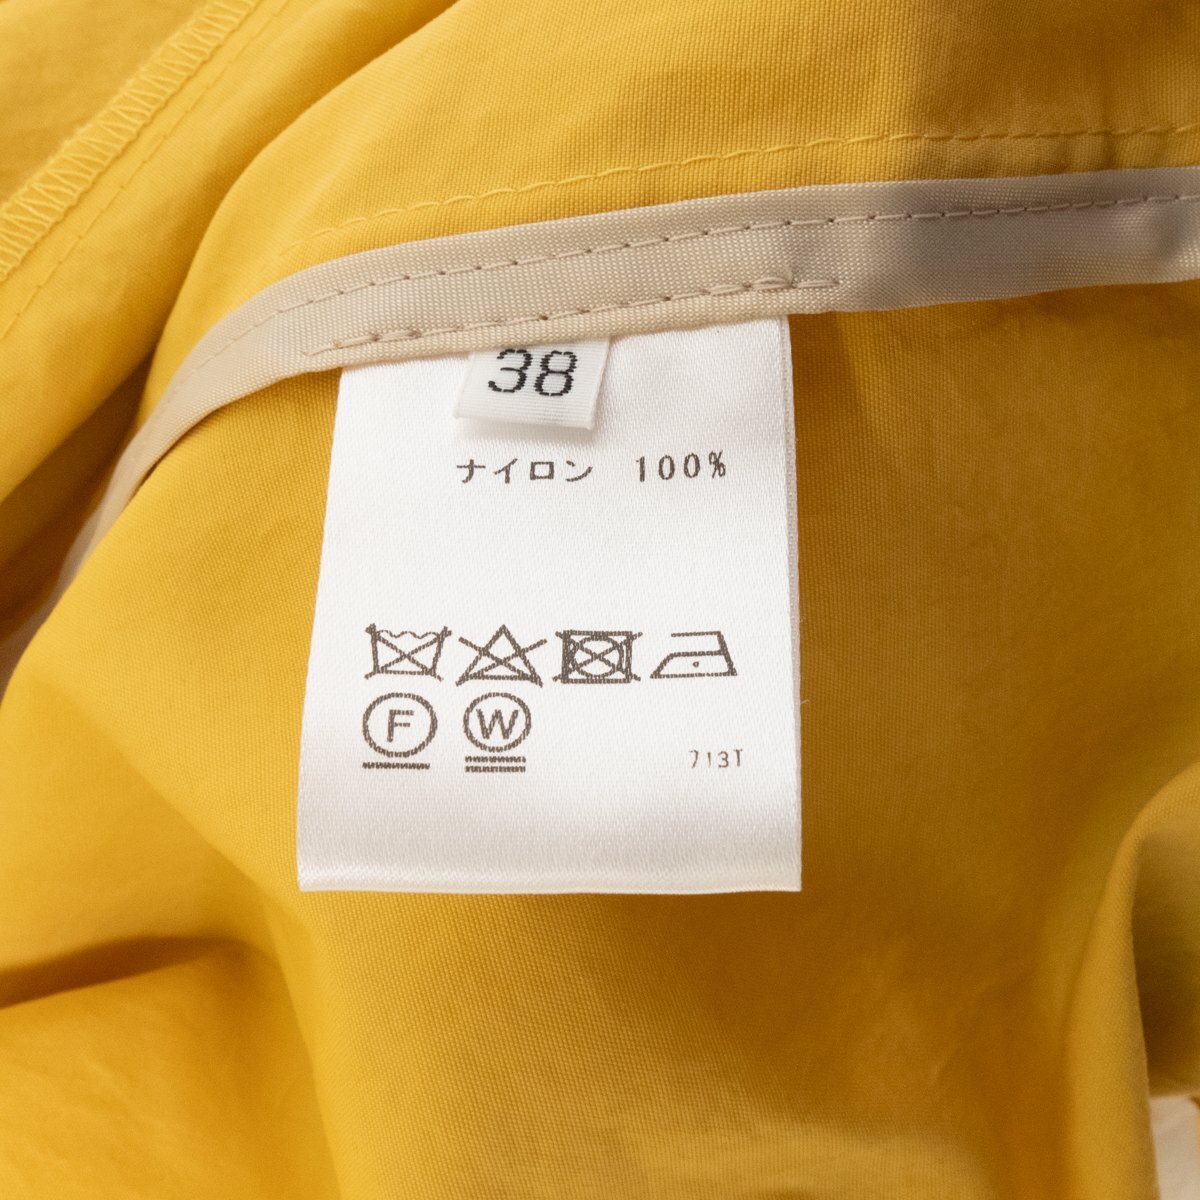 FONTANA GRANDE フォンタナグランデ ジップアップ フーデットコート アウター 上着 羽織 38 ナイロン100% イエロー 黄色 綺麗め カジュアルの画像8